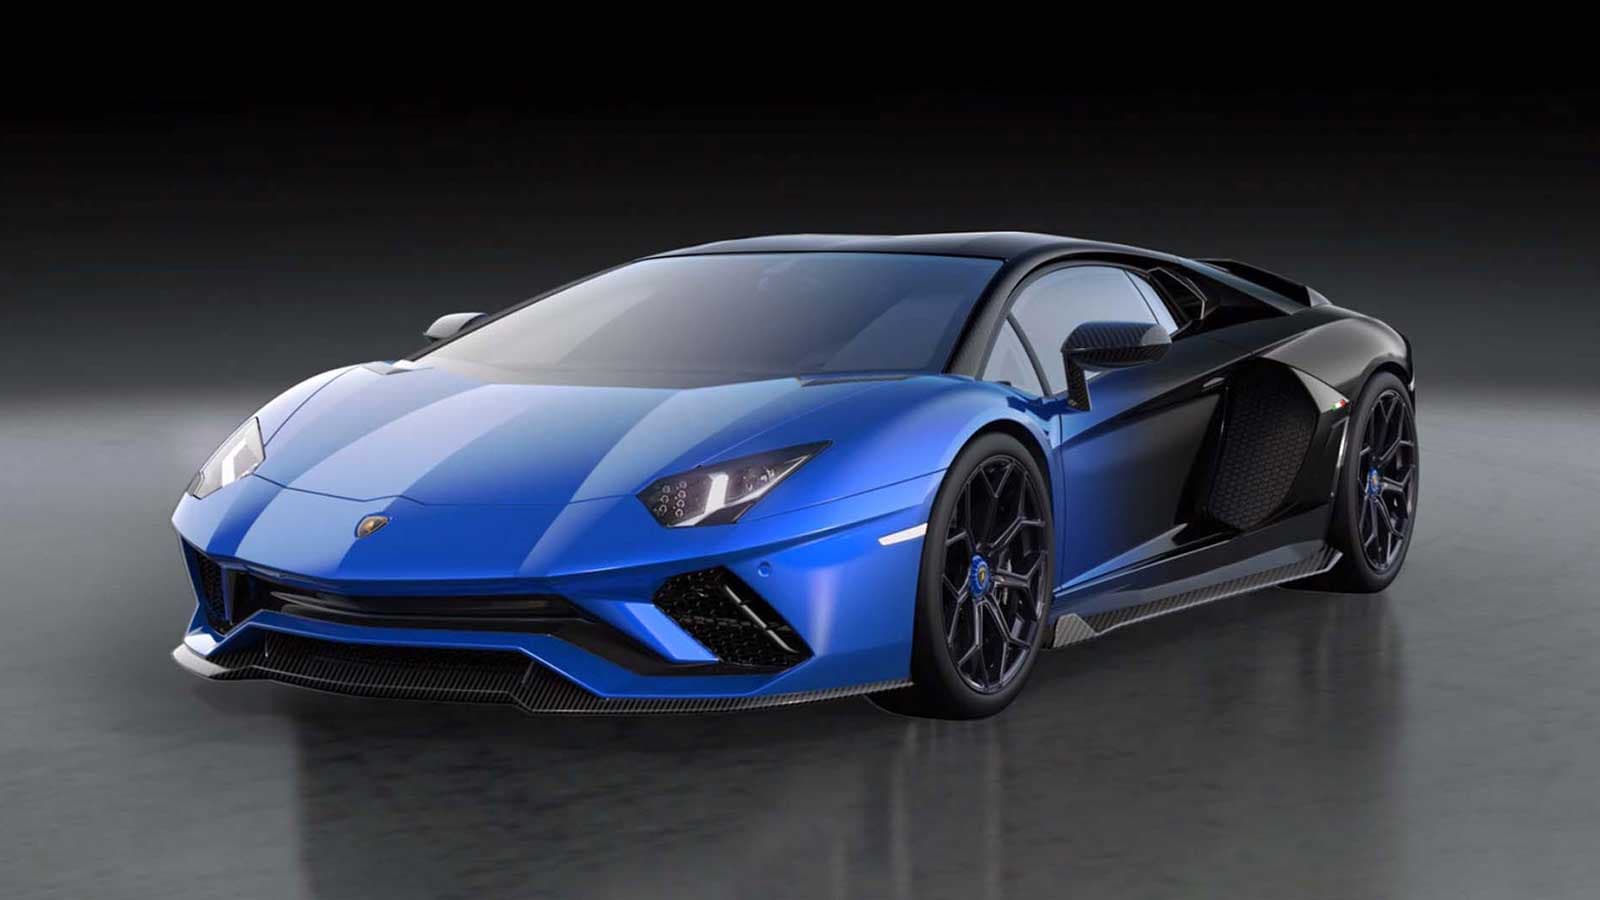 Lamborghini phát hành NFT 1:1 cùng với chiếc Aventador Coupé cuối cùng